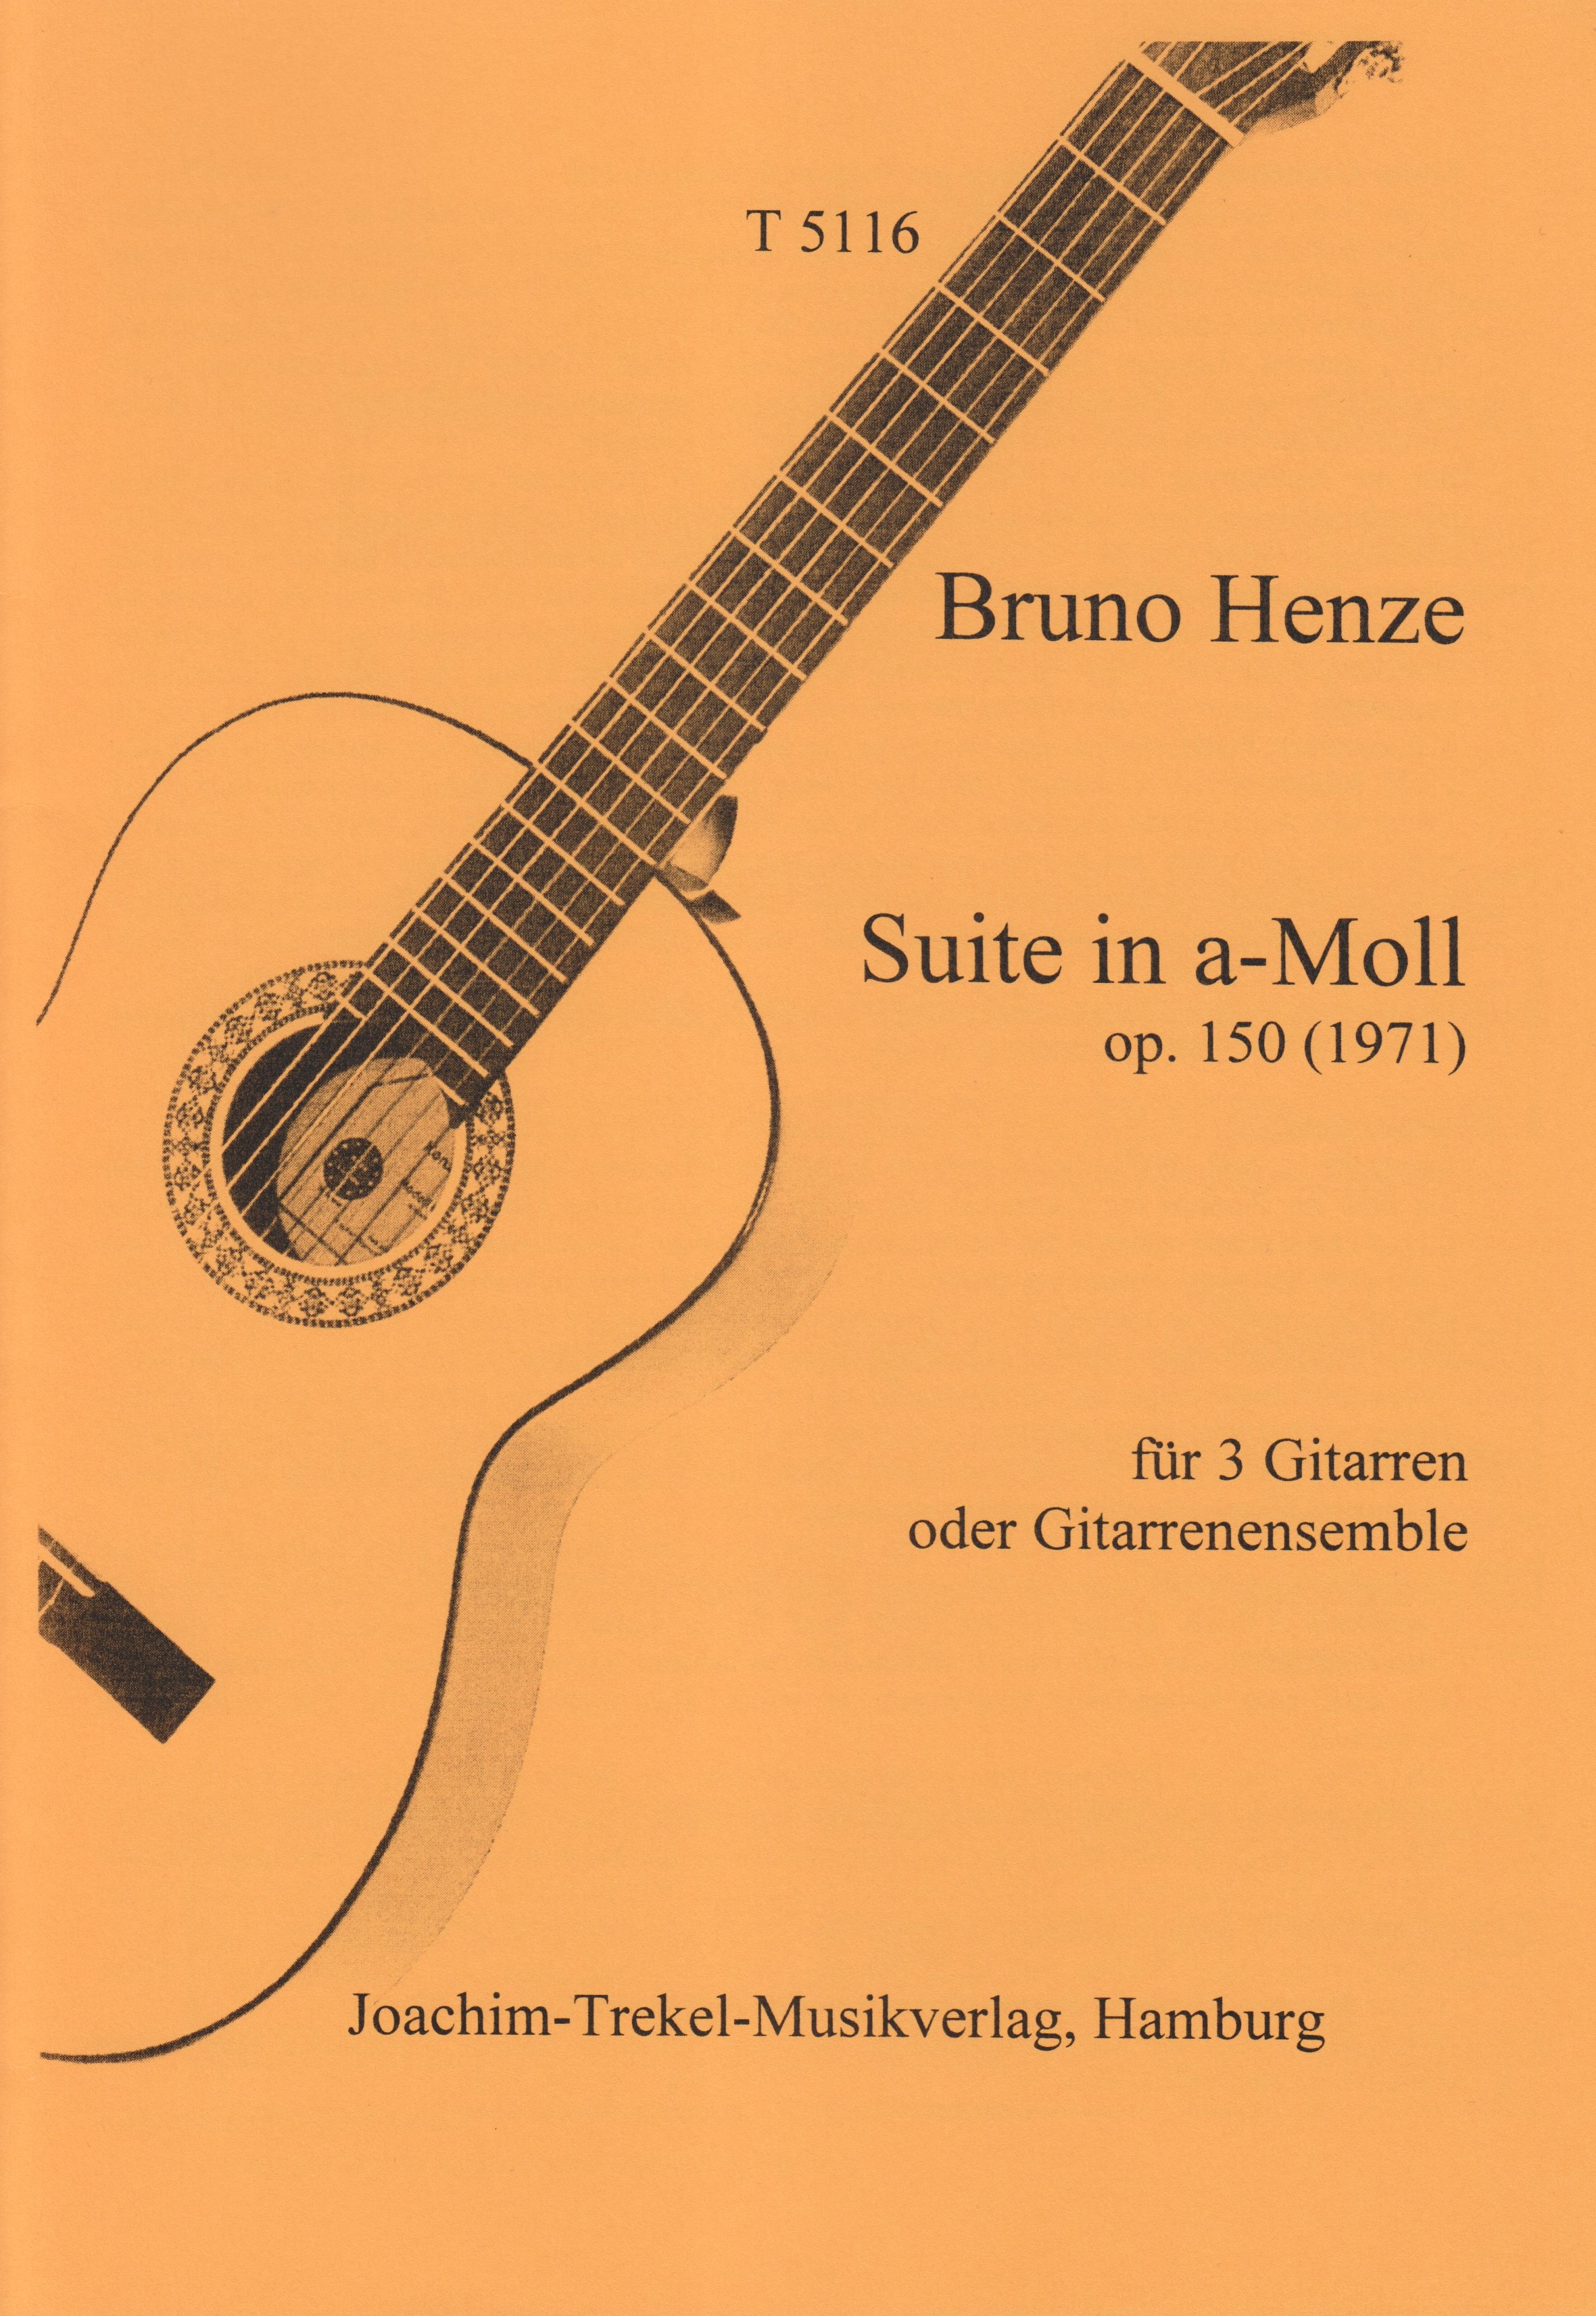 Suite in a-Moll op. 150